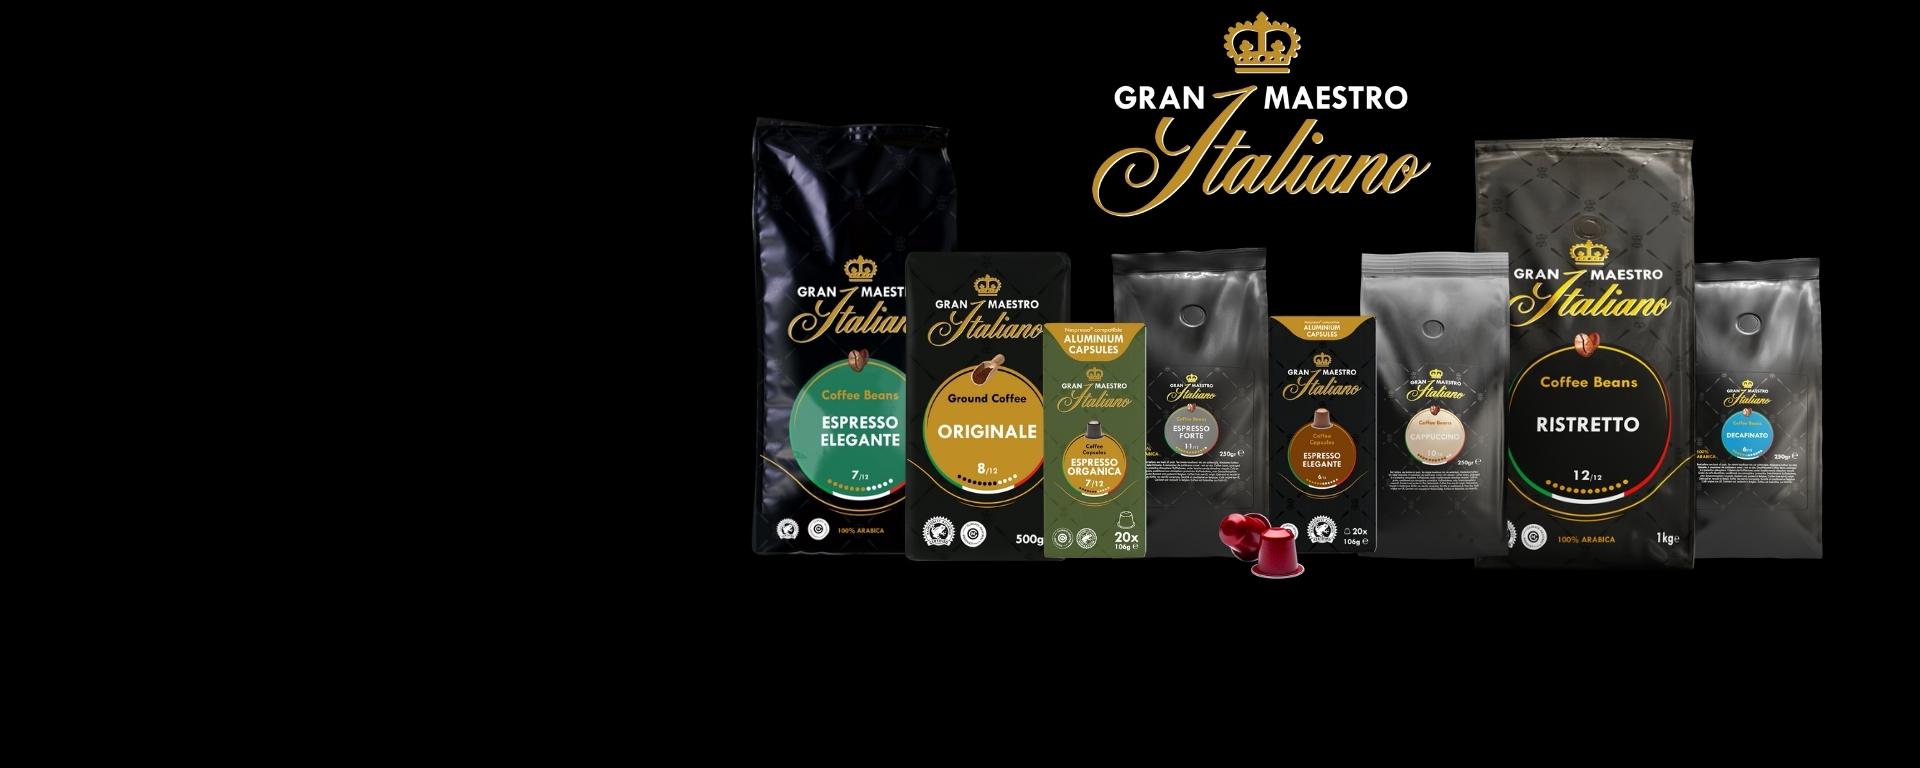 Gran Maestro Italiano koffie